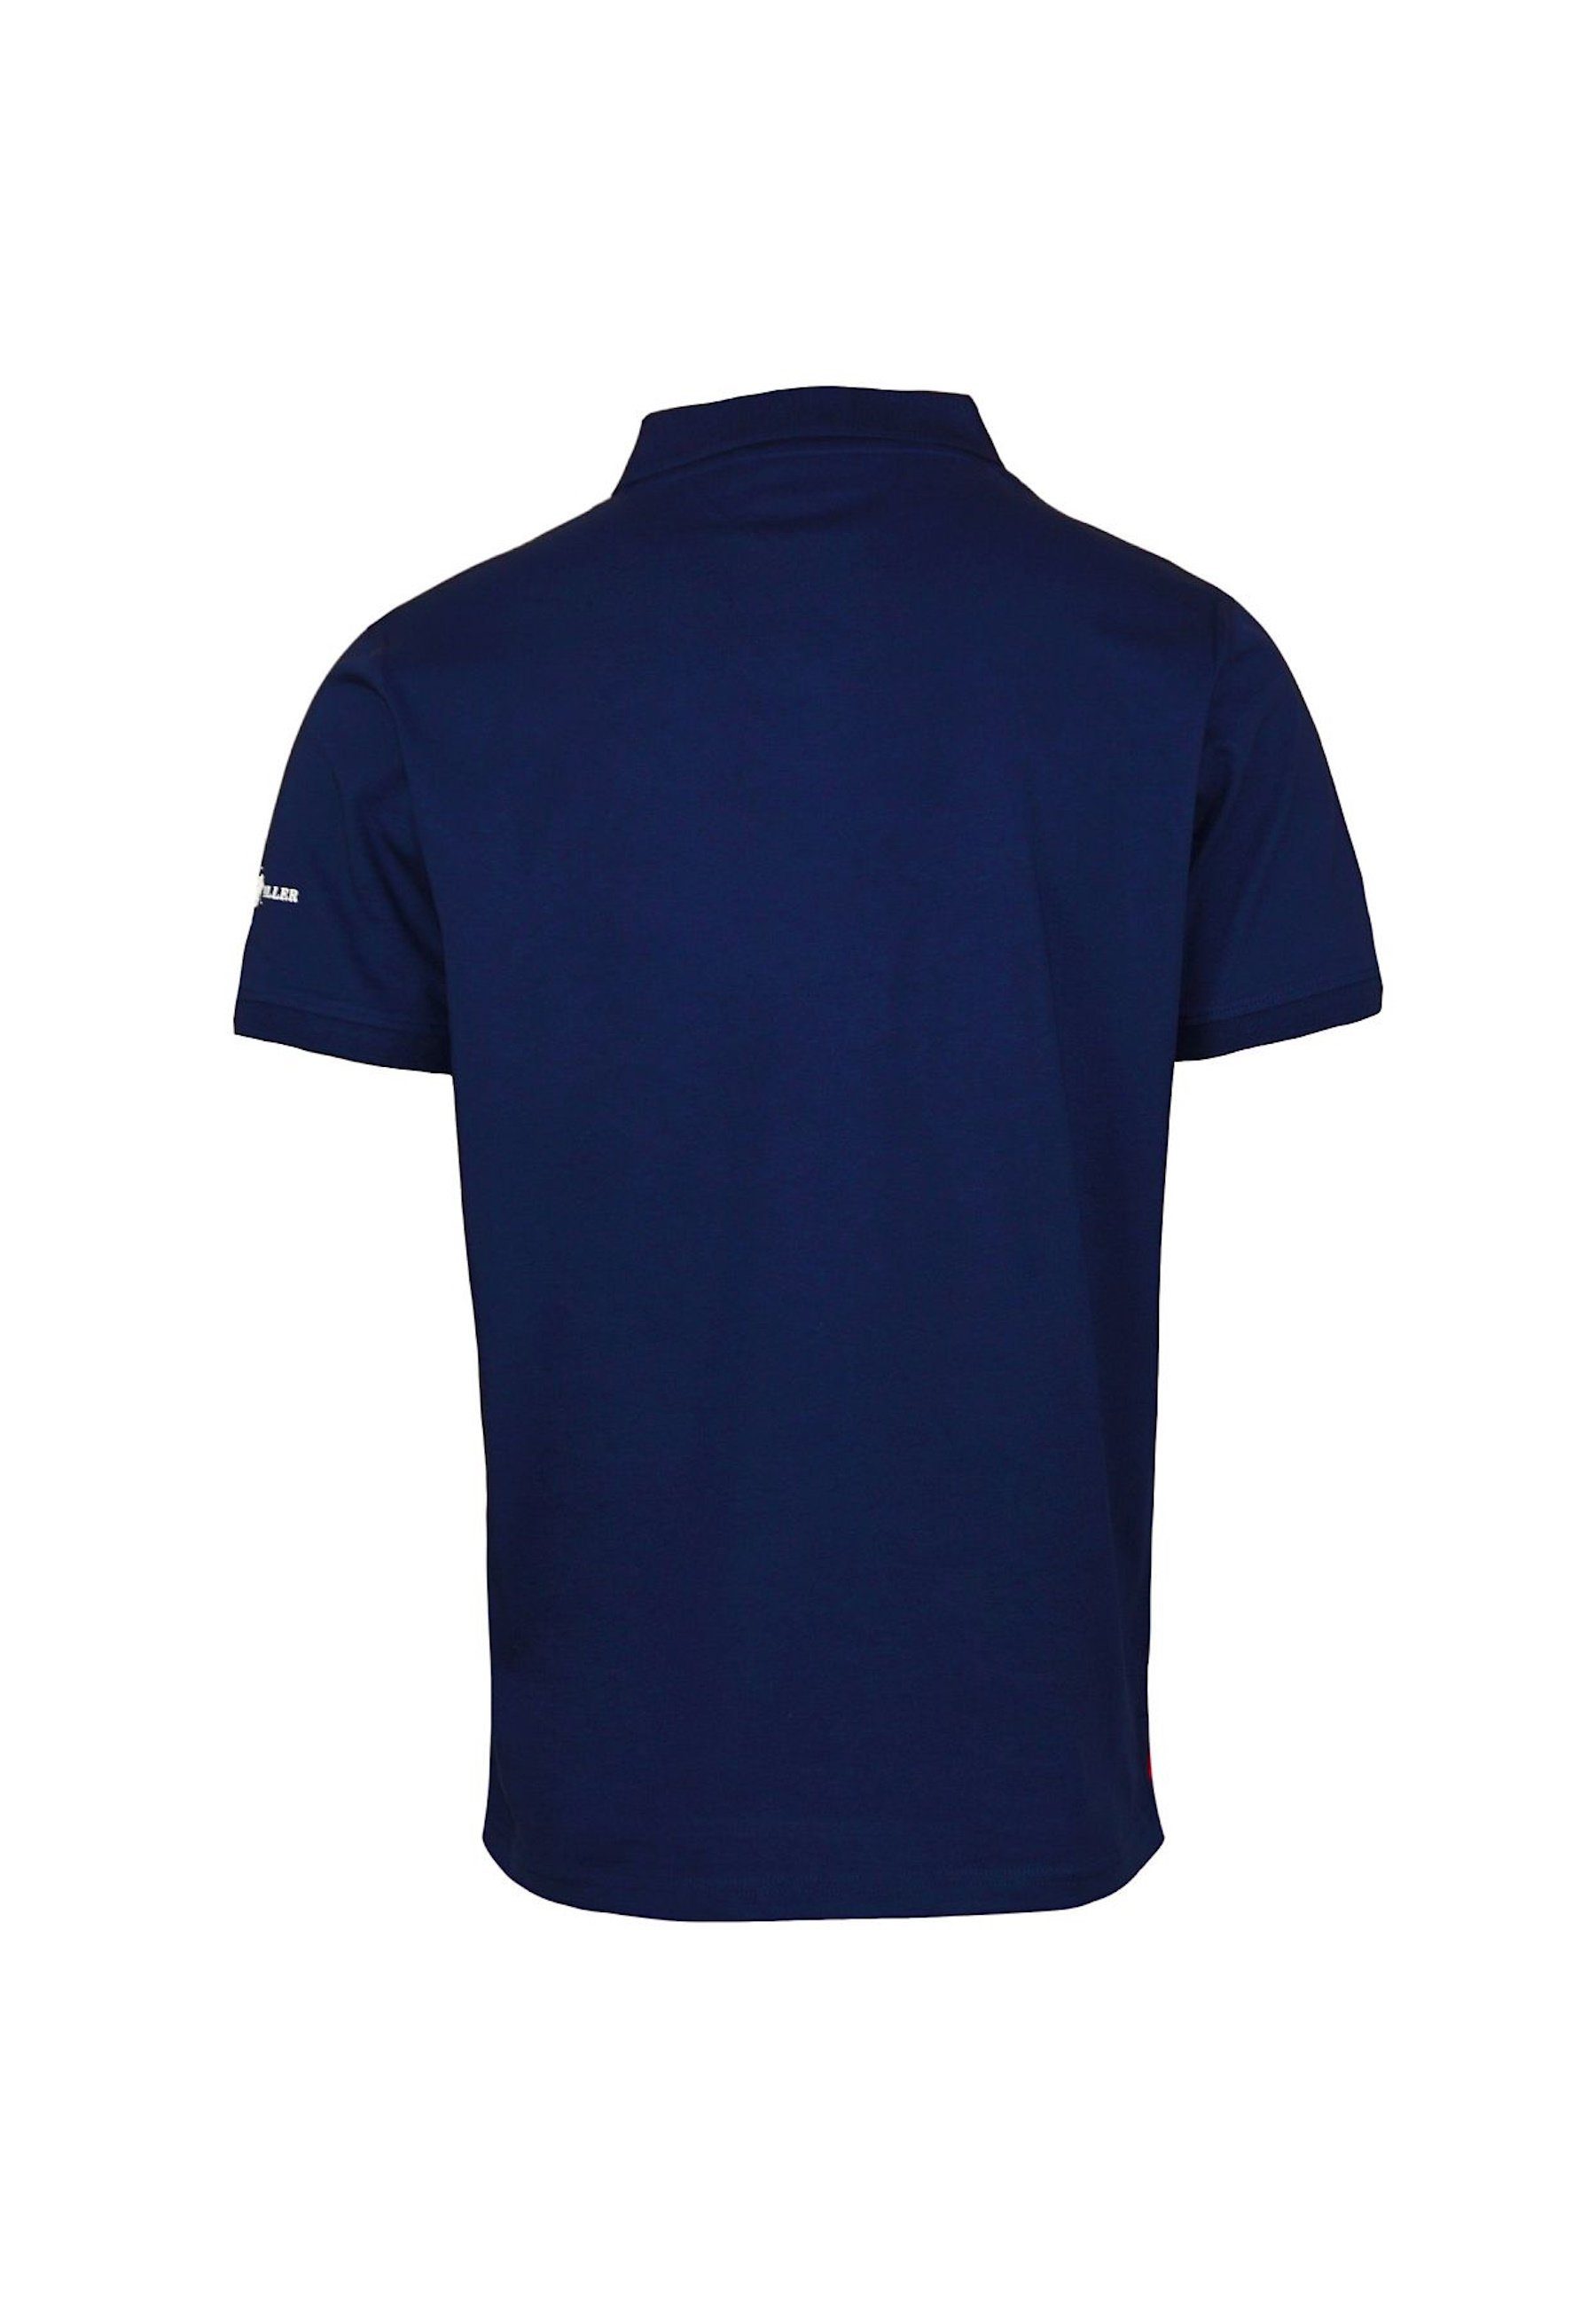 Harvey Miller Poloshirt Poloshirt Polohemd Polo dunkelblau Springfield Shortsleeve